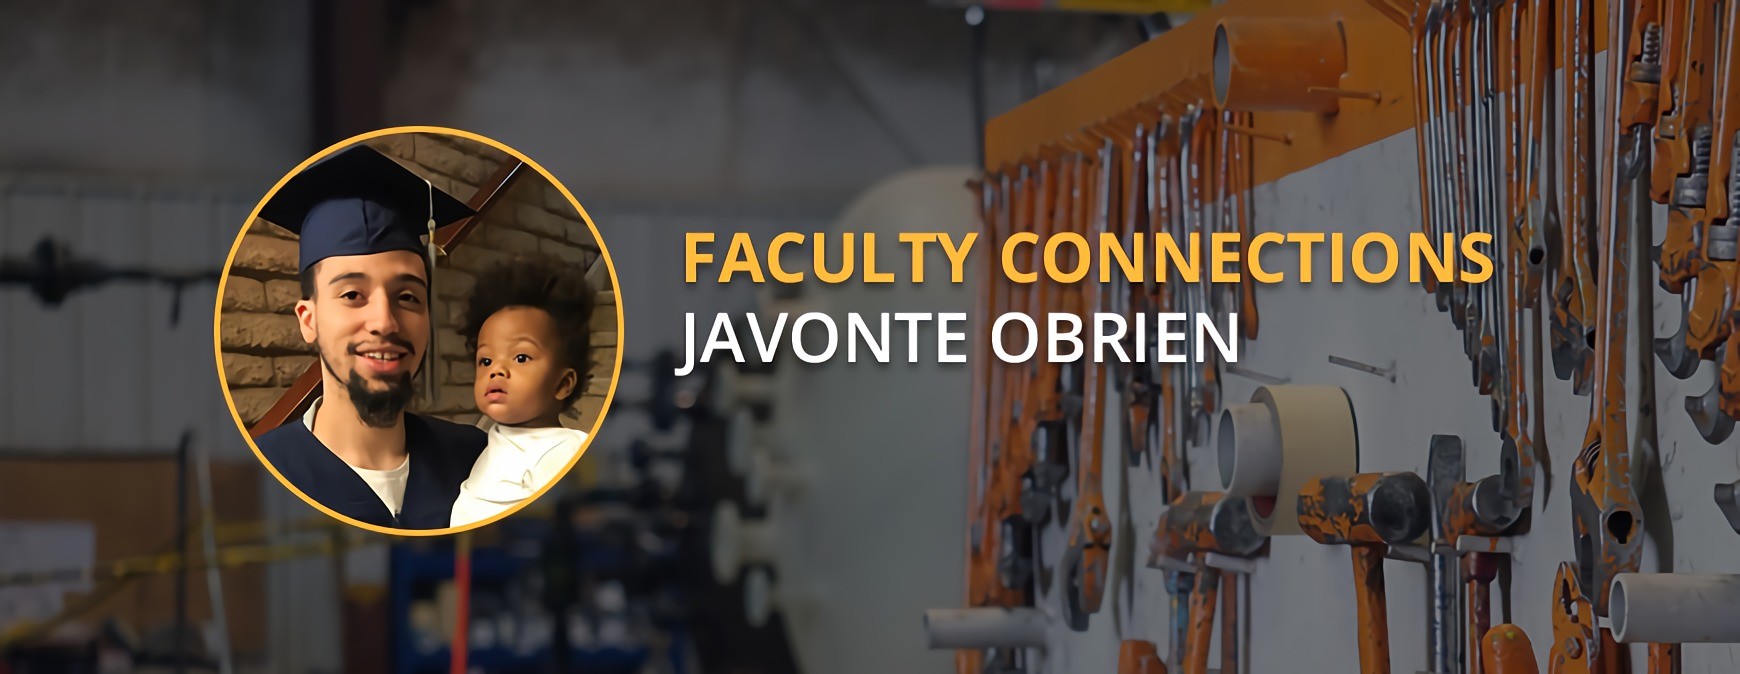 Javonte Obrien graduate connection